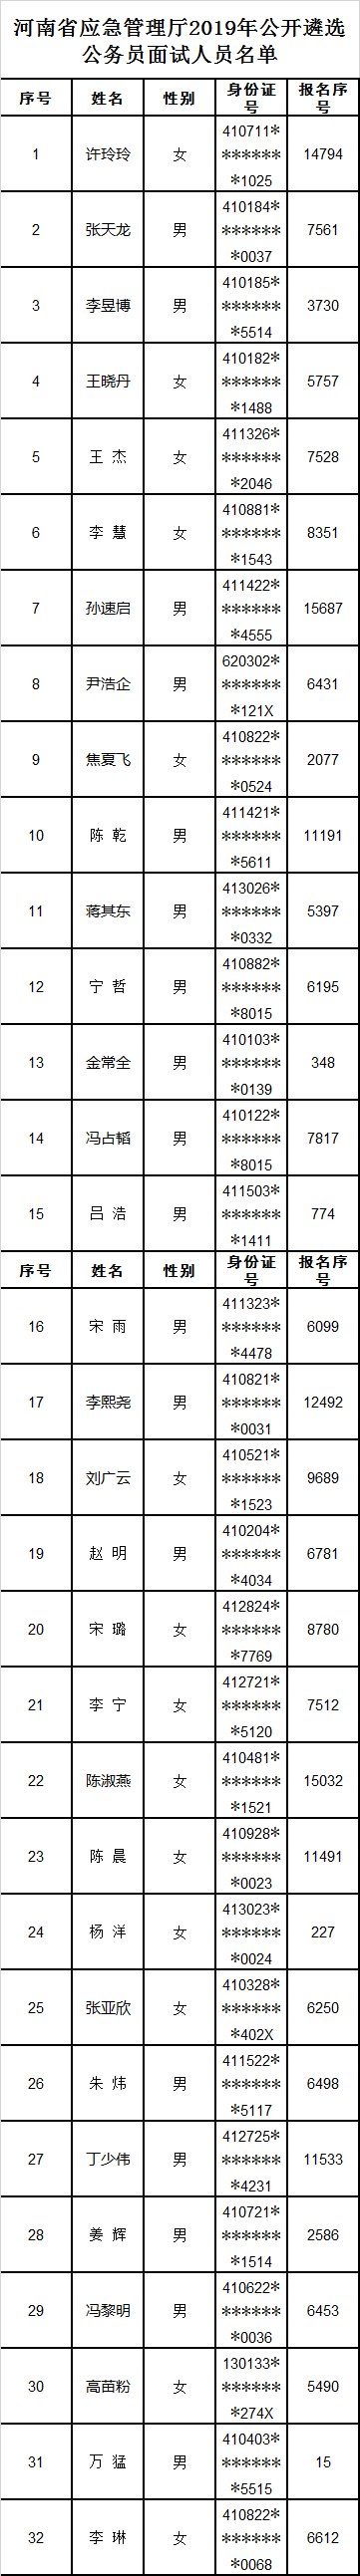 1.河南省应急管理厅2019年公开遴选公务员面试人员名单.png